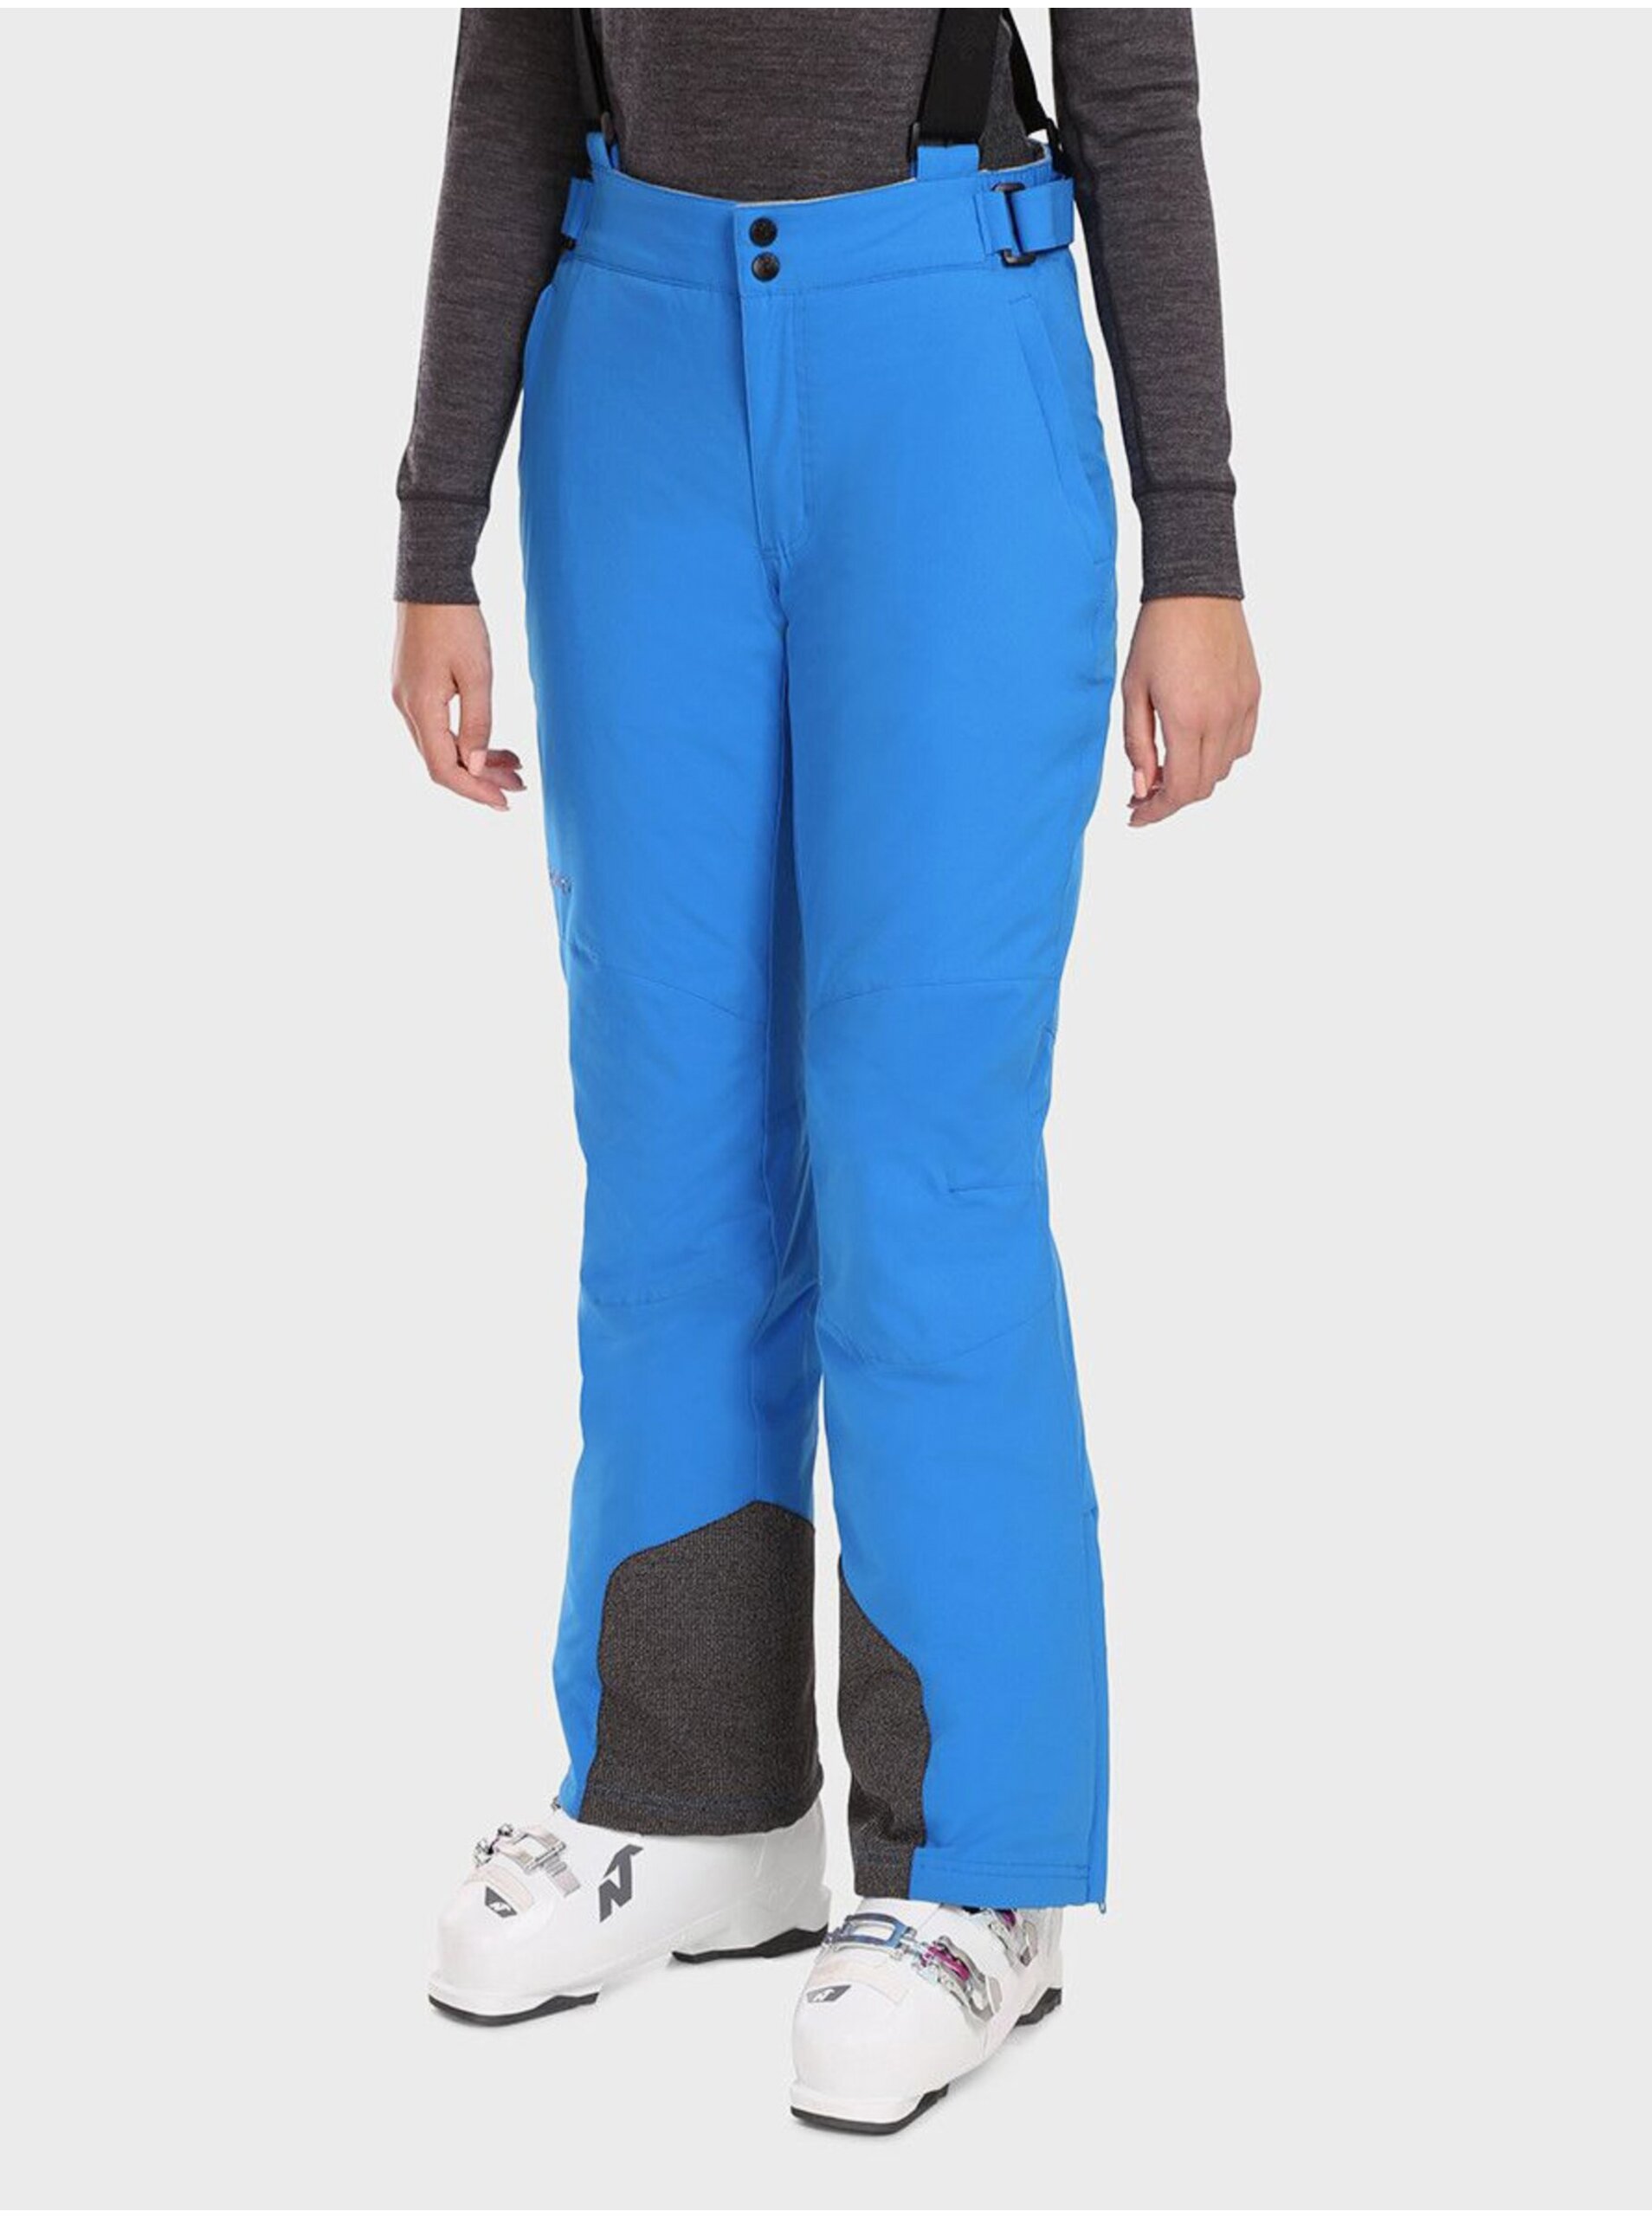 E-shop Modré dámské lyžařské kalhoty KILPI ELARE